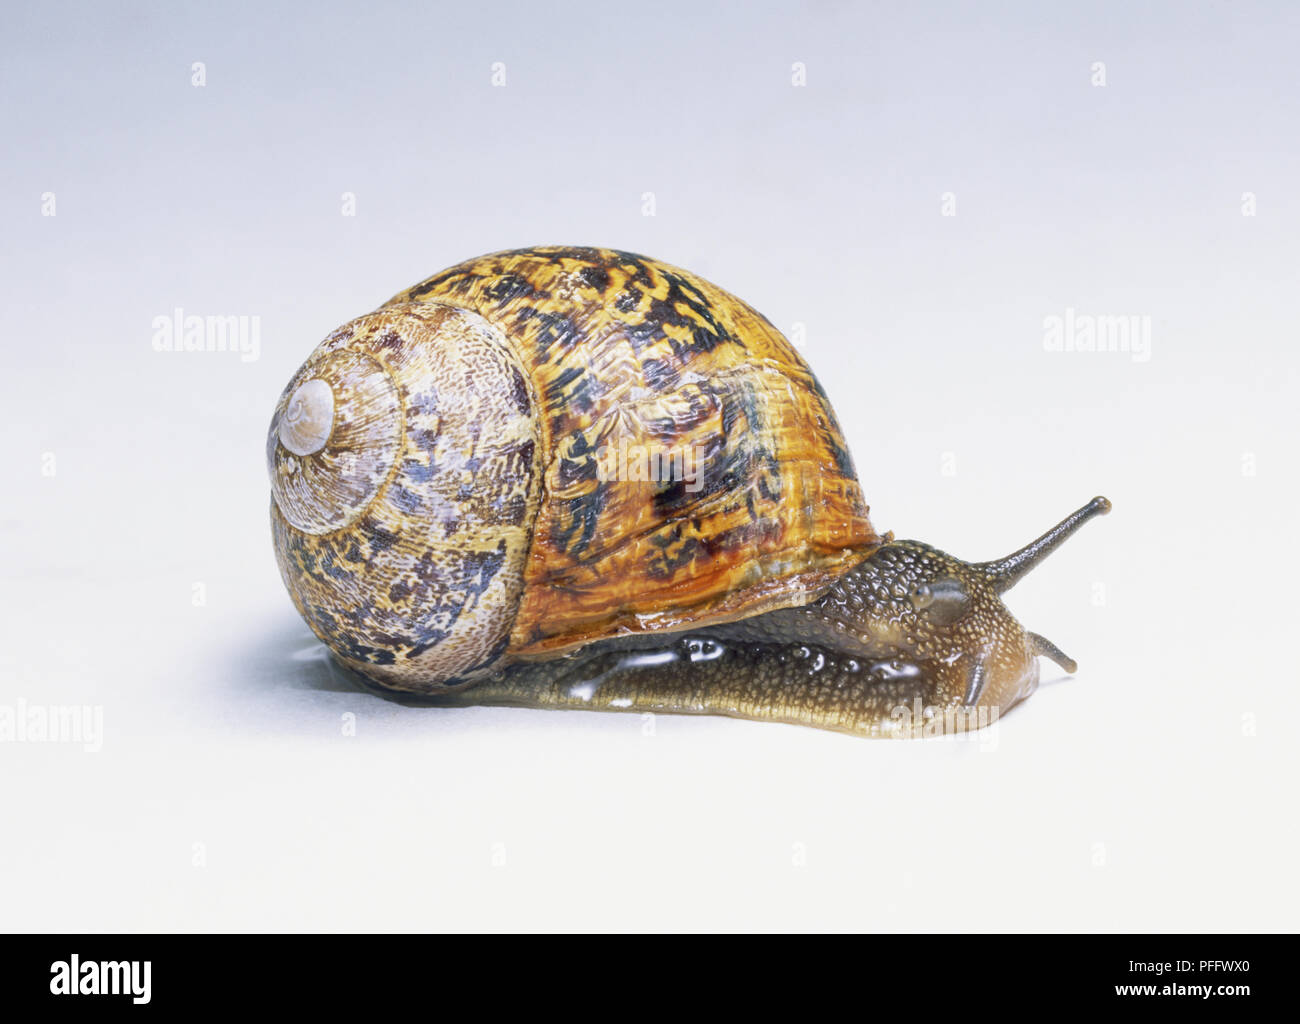 Garden Snail (Helix aspersa), side view, close up Stock Photo